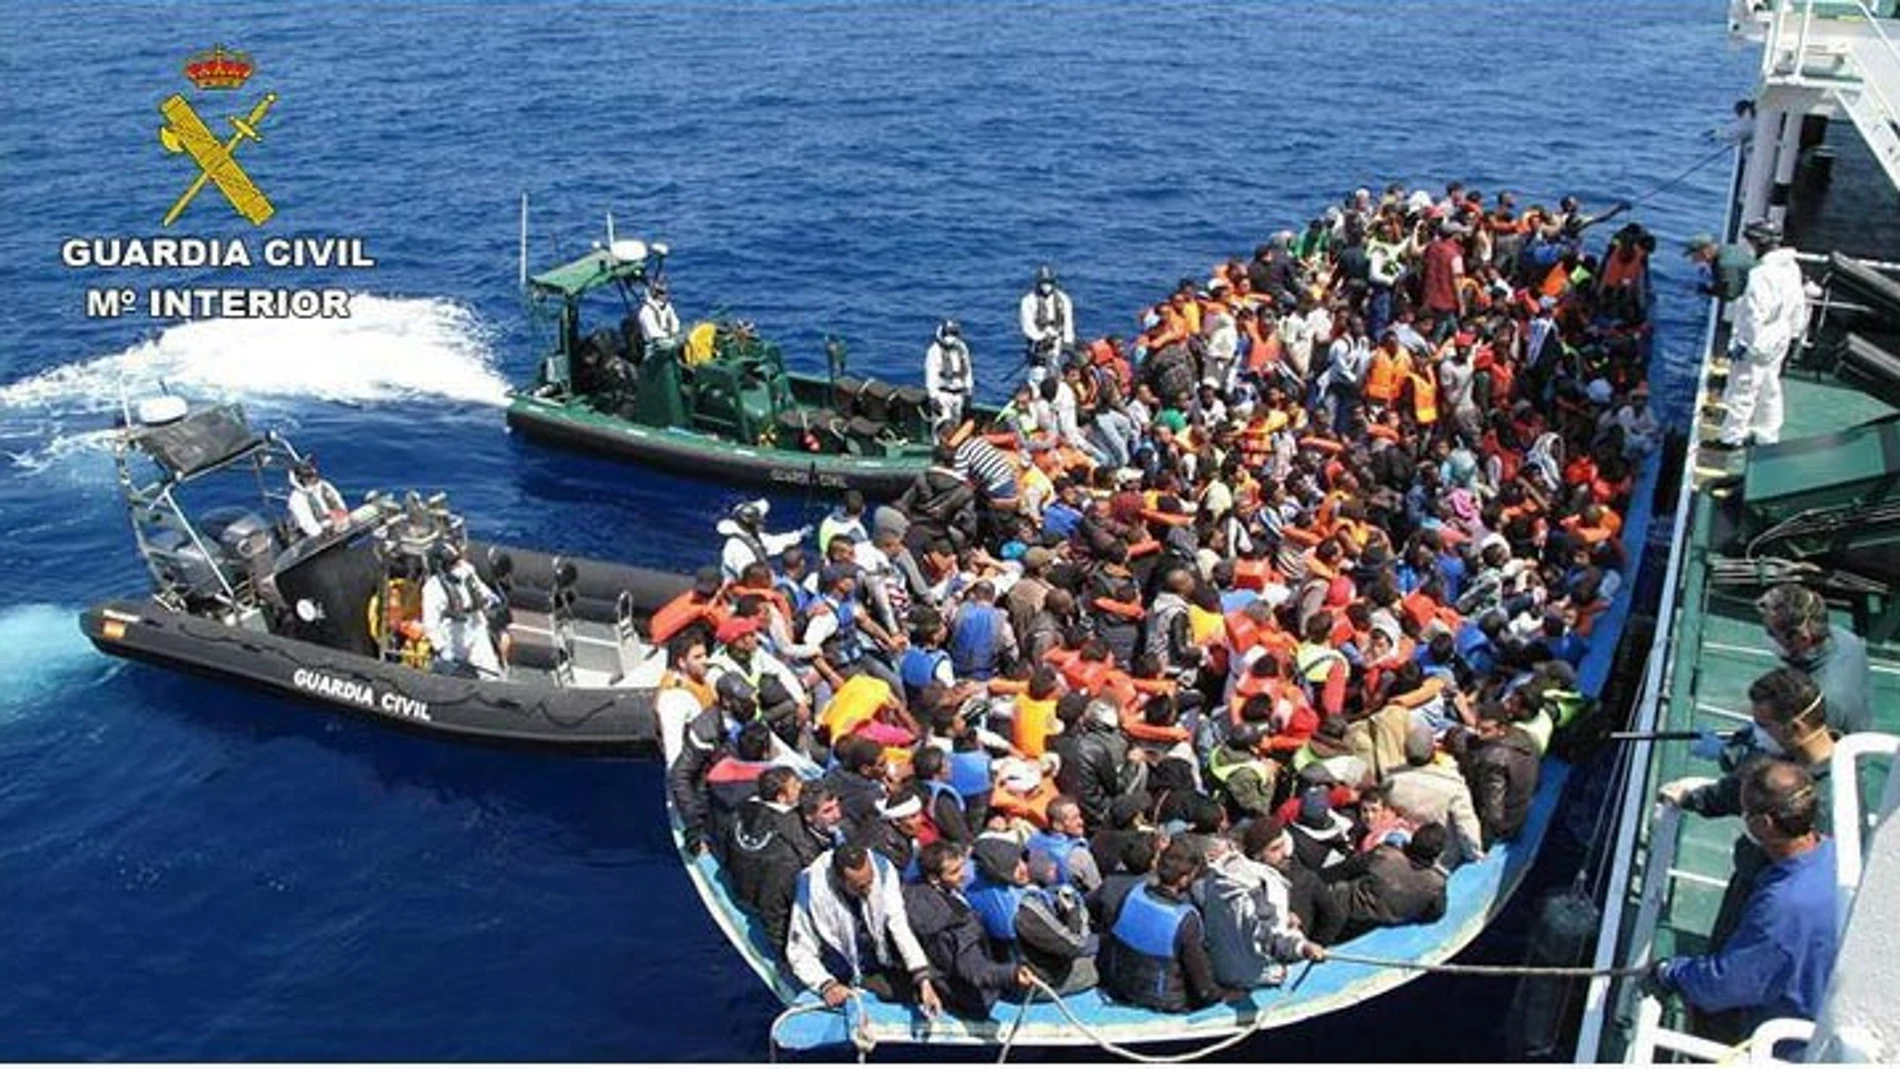 Los inmigrantes junto a la embarcación de la Guardia Civil